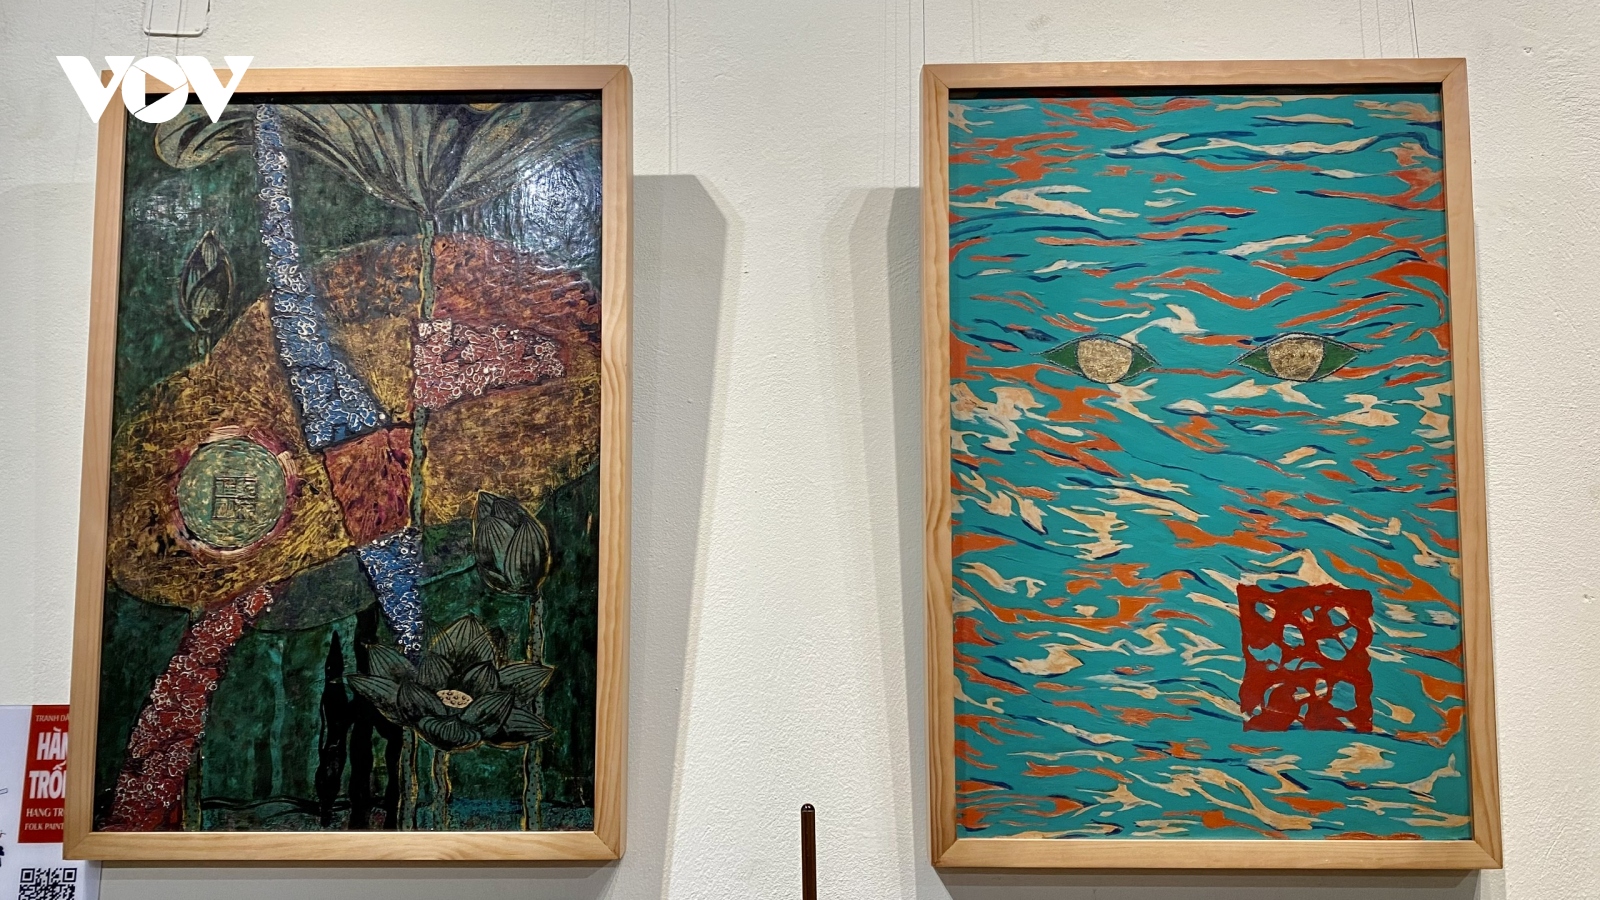 Triển lãm "Đối thoại": Phát triển nghệ thuật sơn mài tại Việt Nam